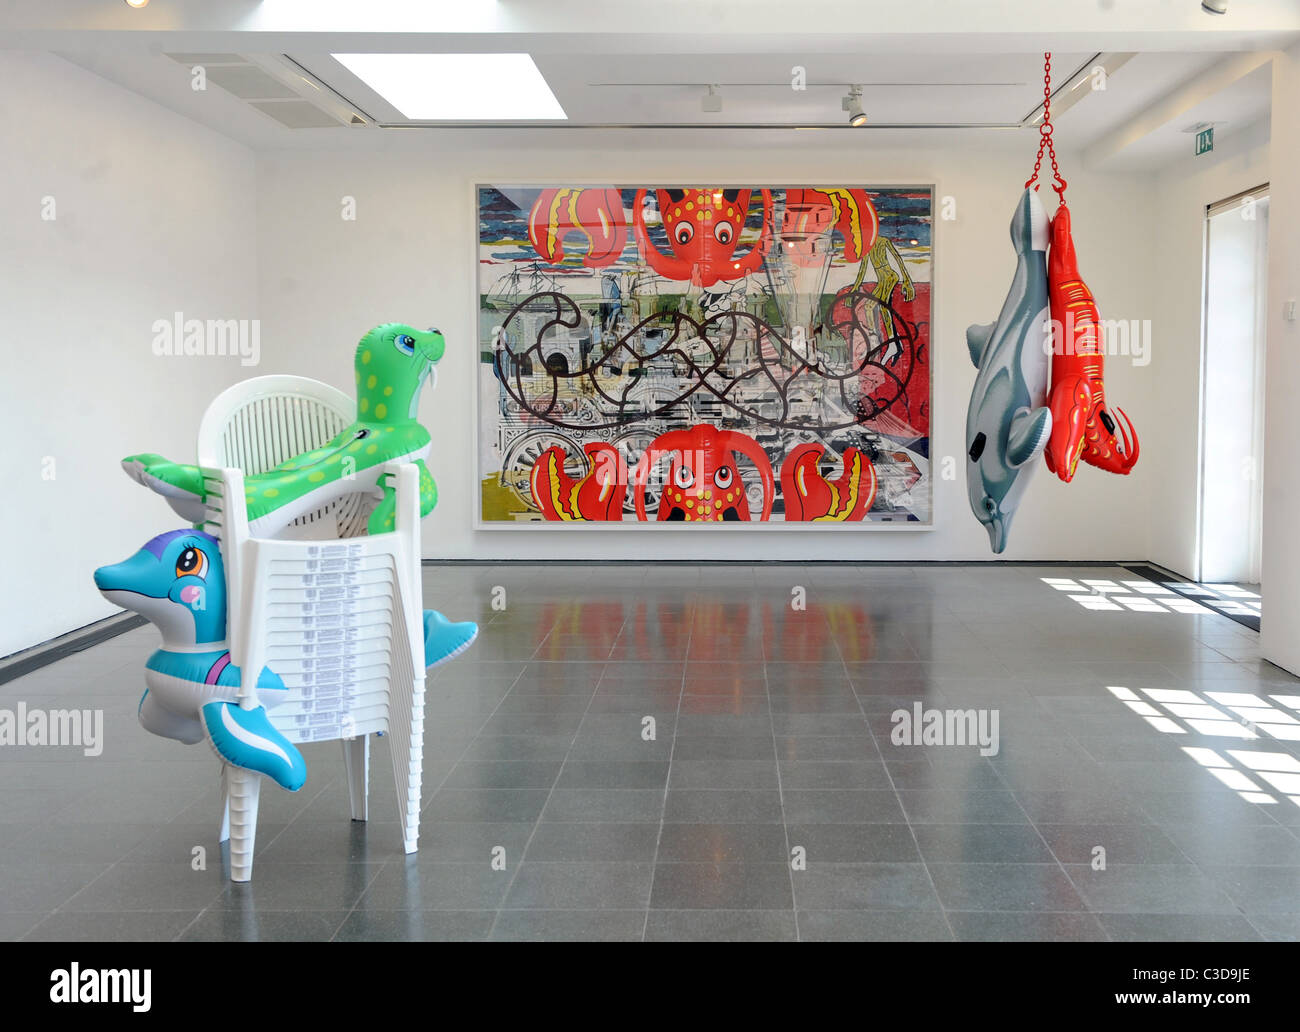 Jeff Koons: Popeye Series - Serpentine Galleries